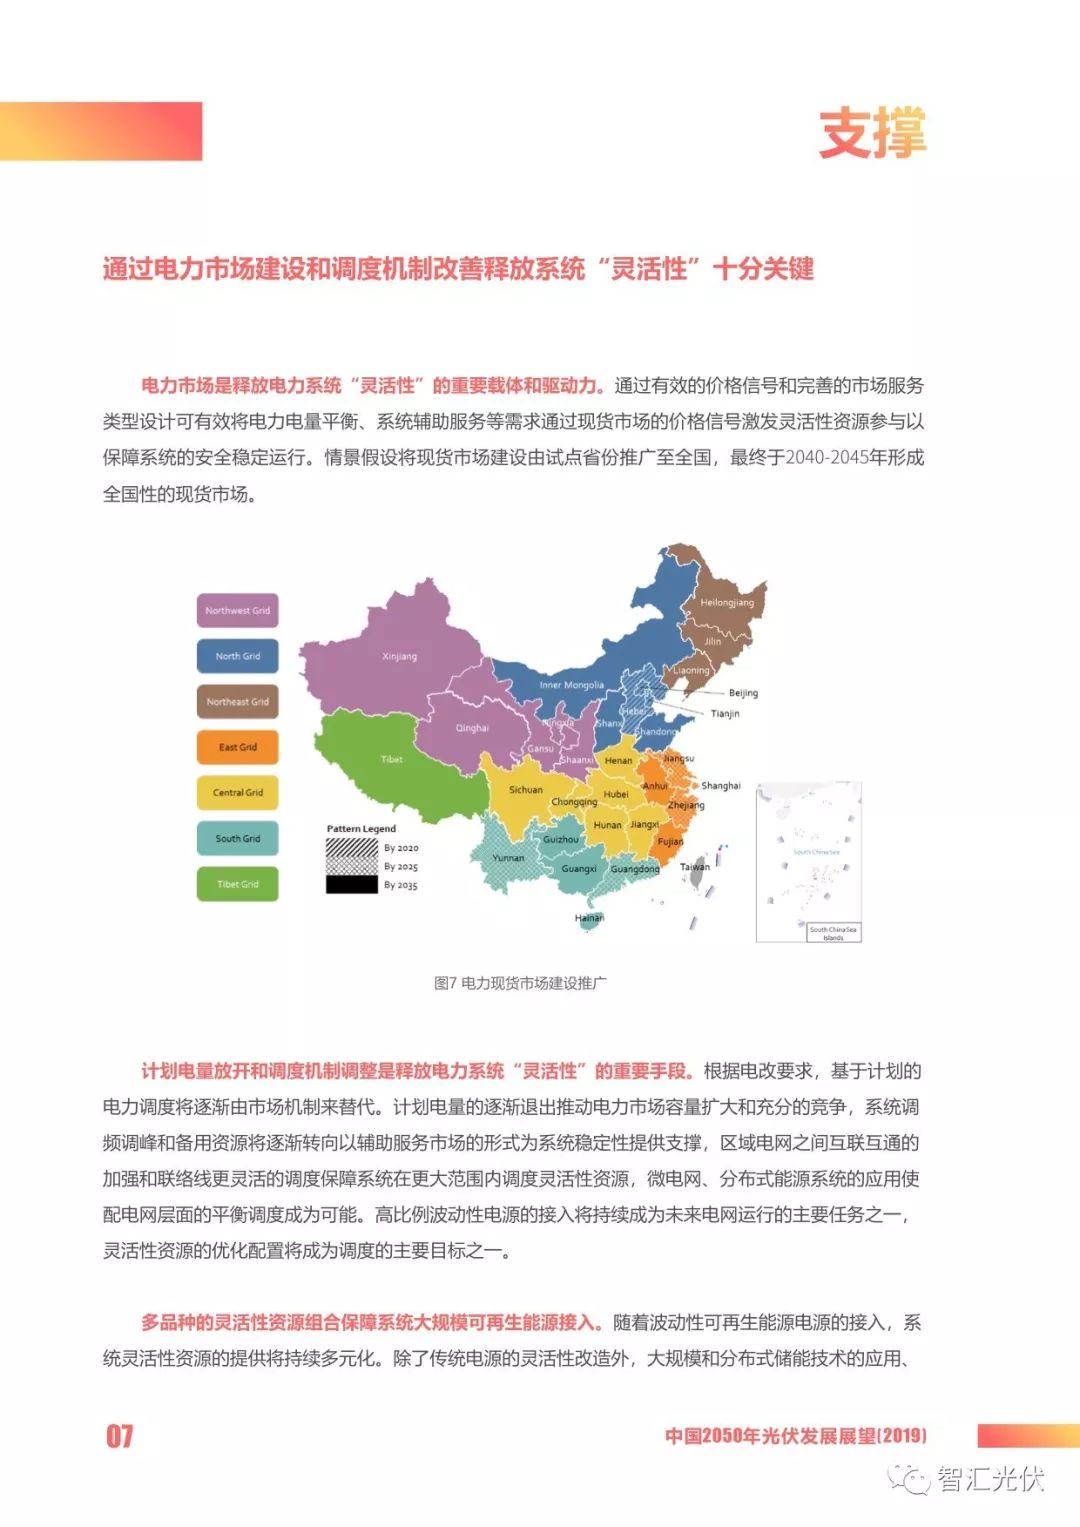 《中国2050年光伏发展展望》度电成本013元